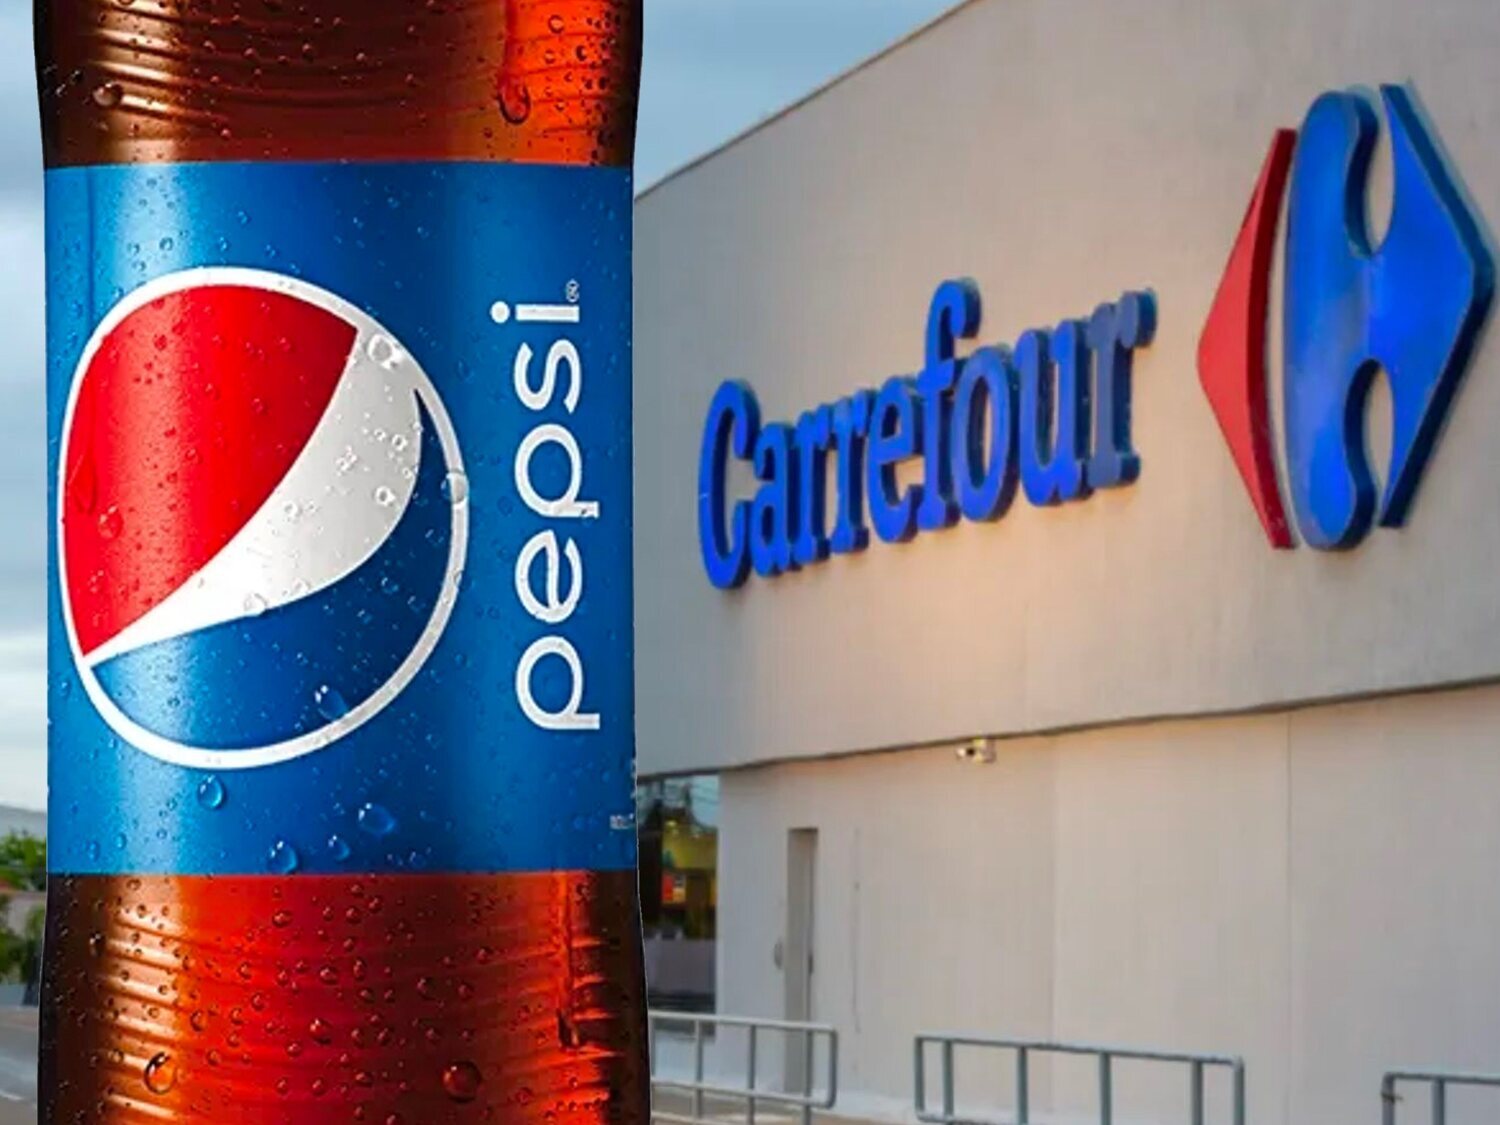 Pepsi responde a Carrefour dando su versión sobre por qué dejan de vender sus productos